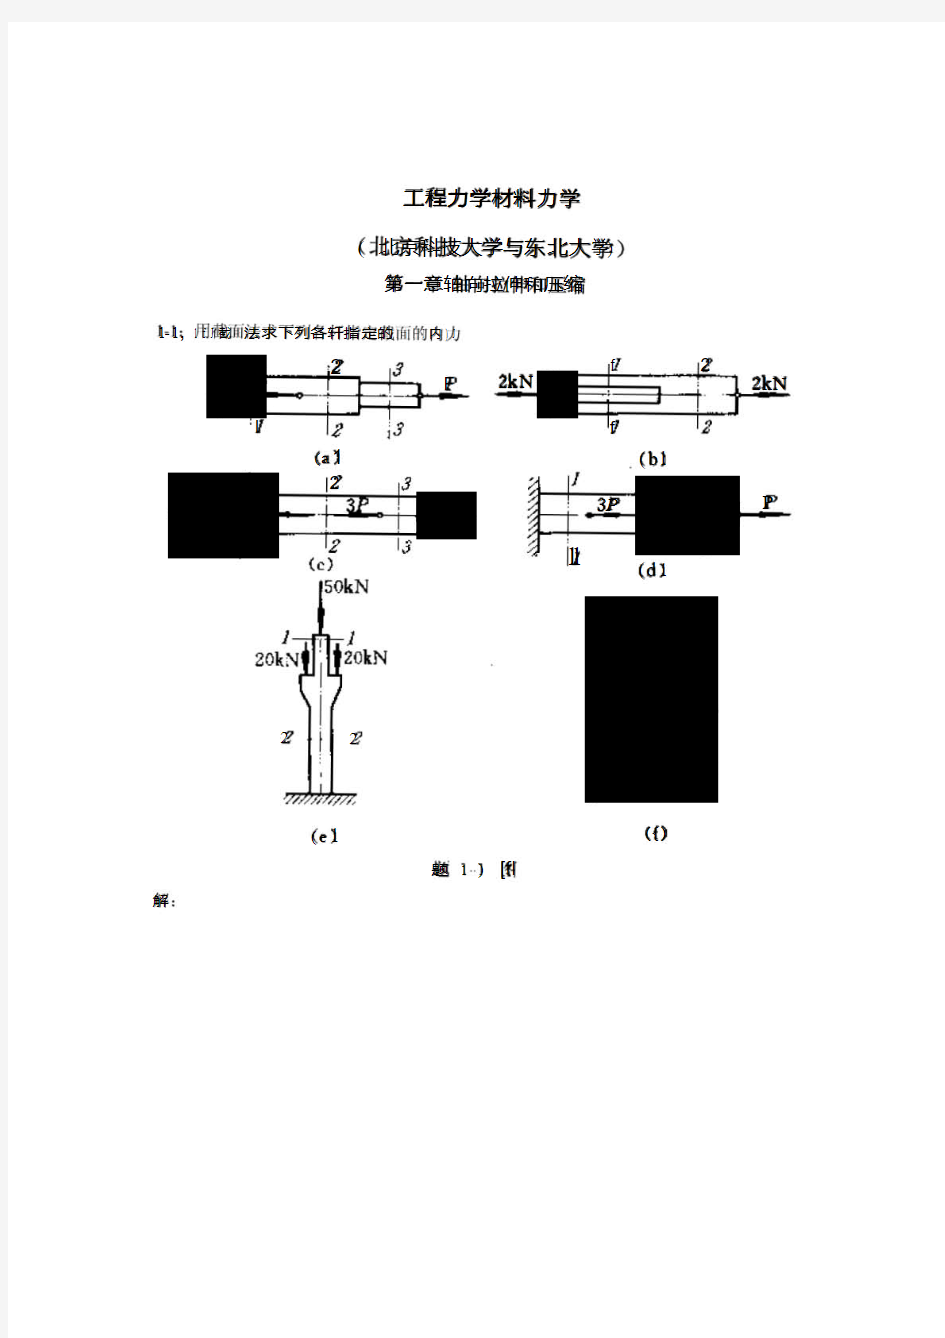 工程力学材料力学第四版(北京科技大学与东北大学)习题答案